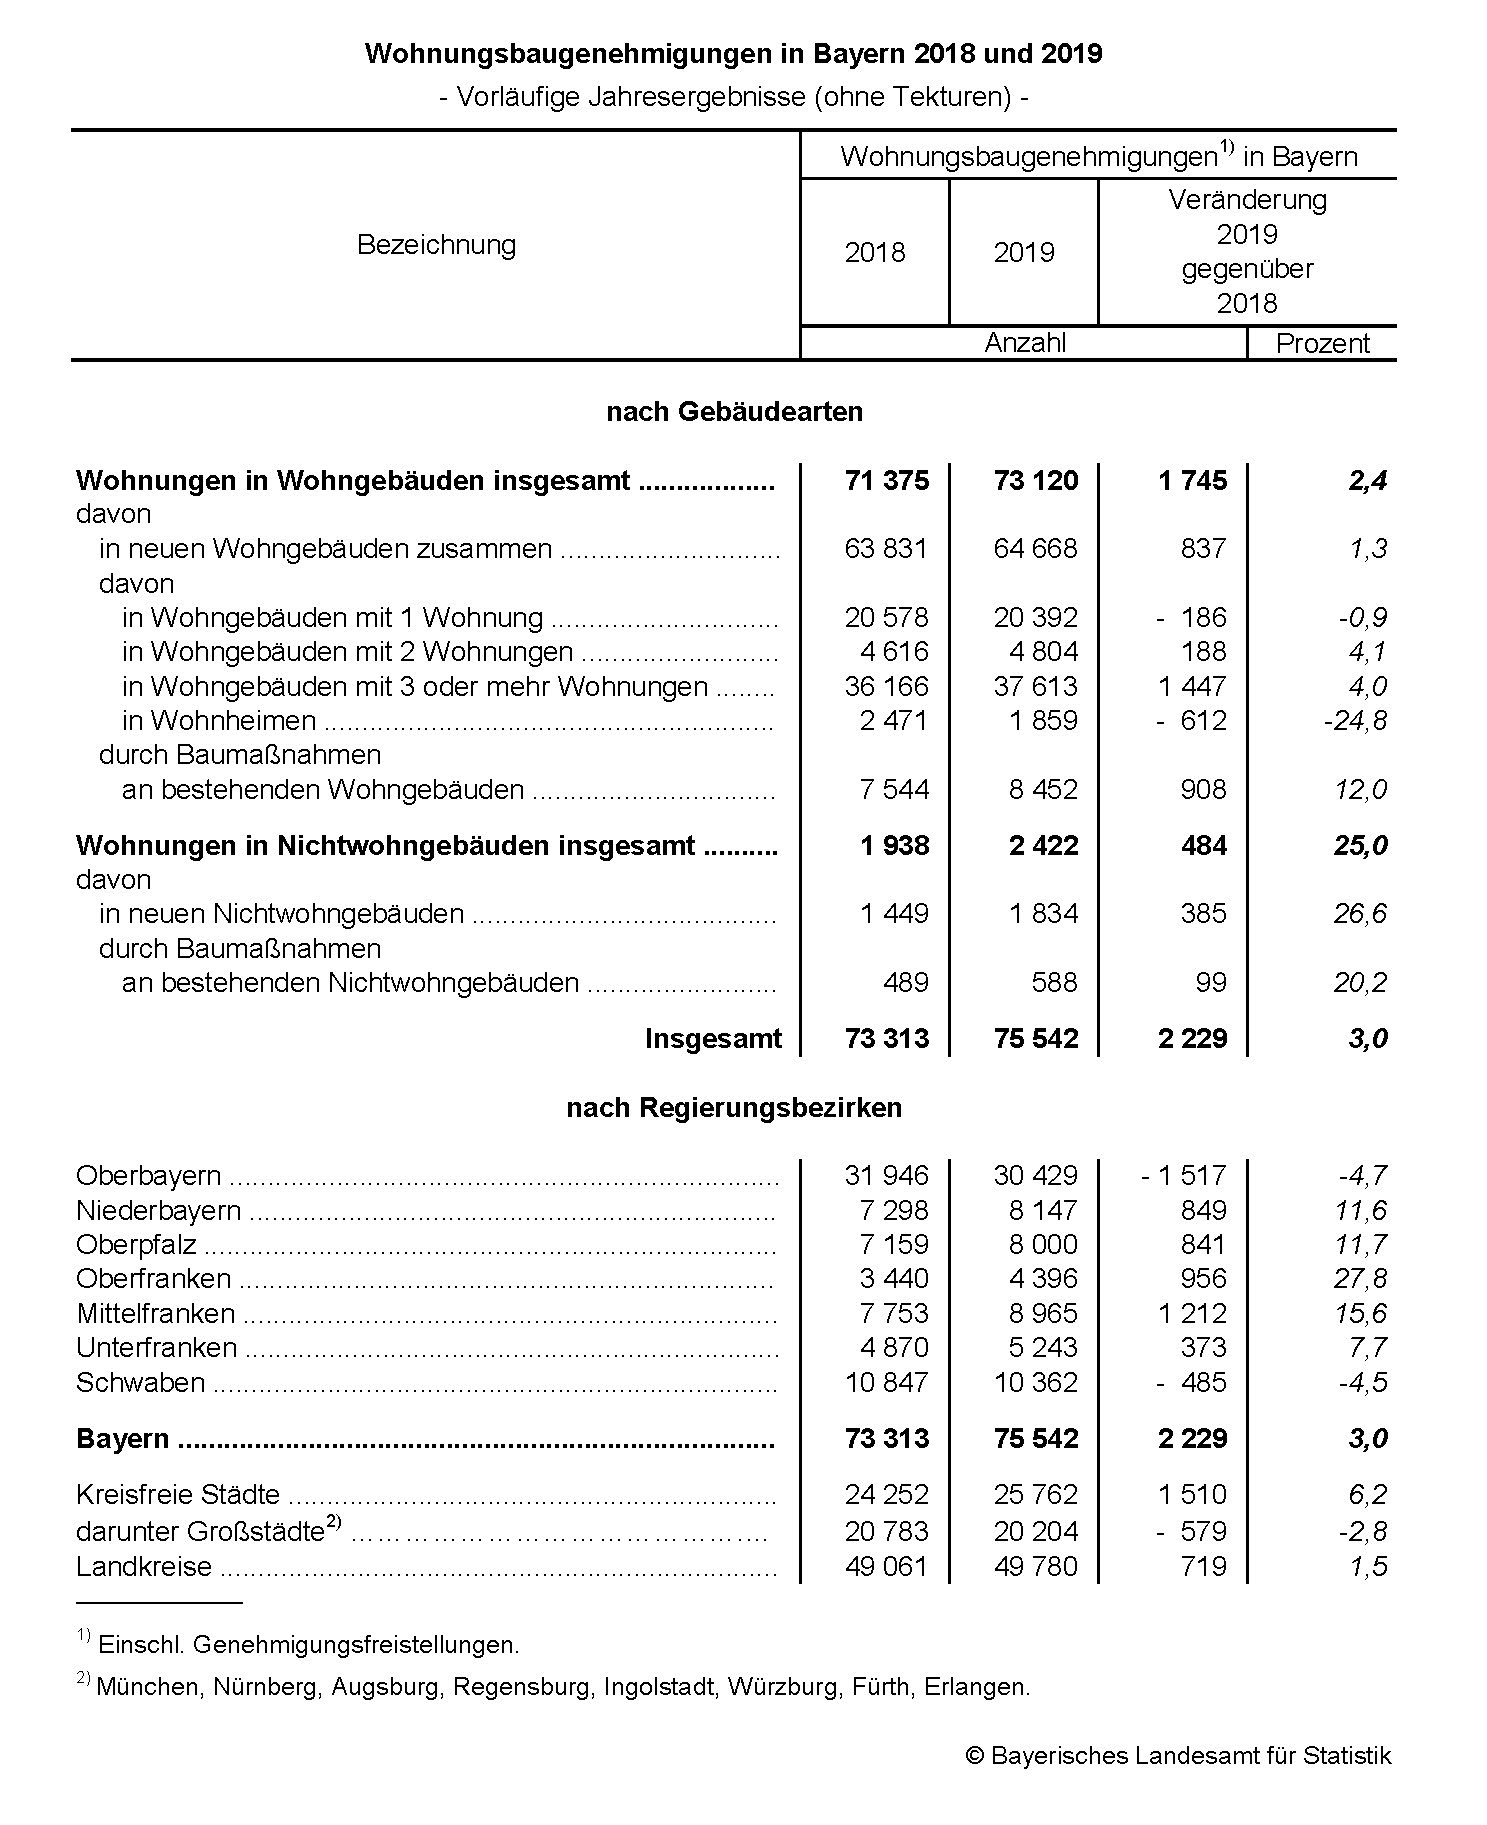 Wohnungsbaugenehmigungen in Bayern 2018 und 2019